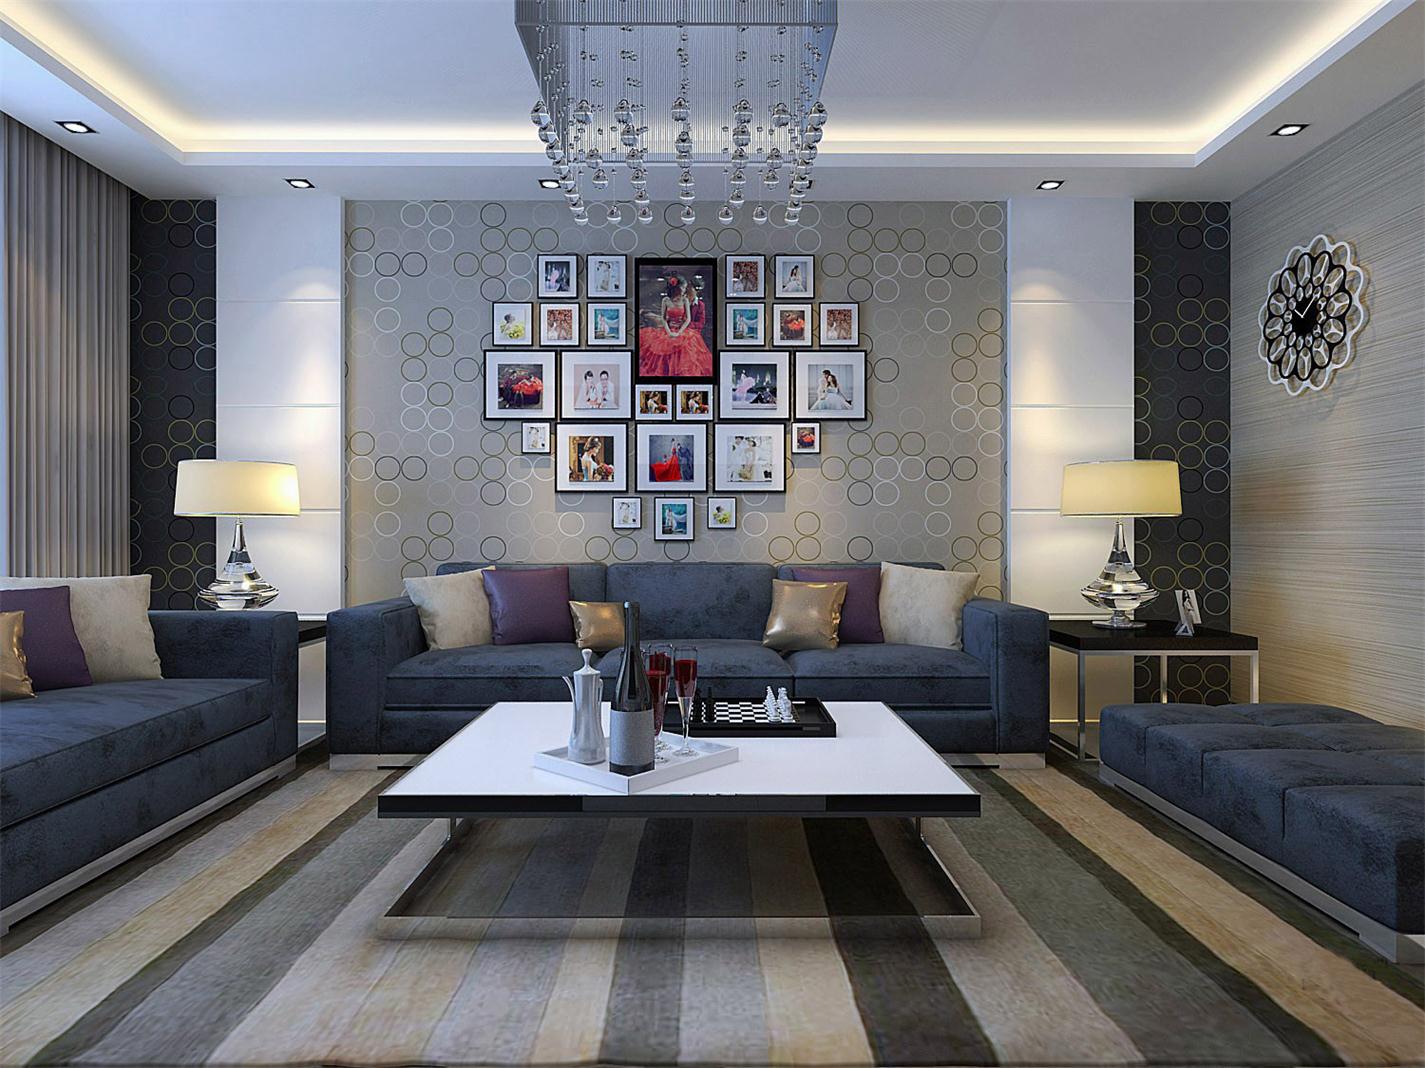 紫晶悦城两室两厅现代简约风格设计